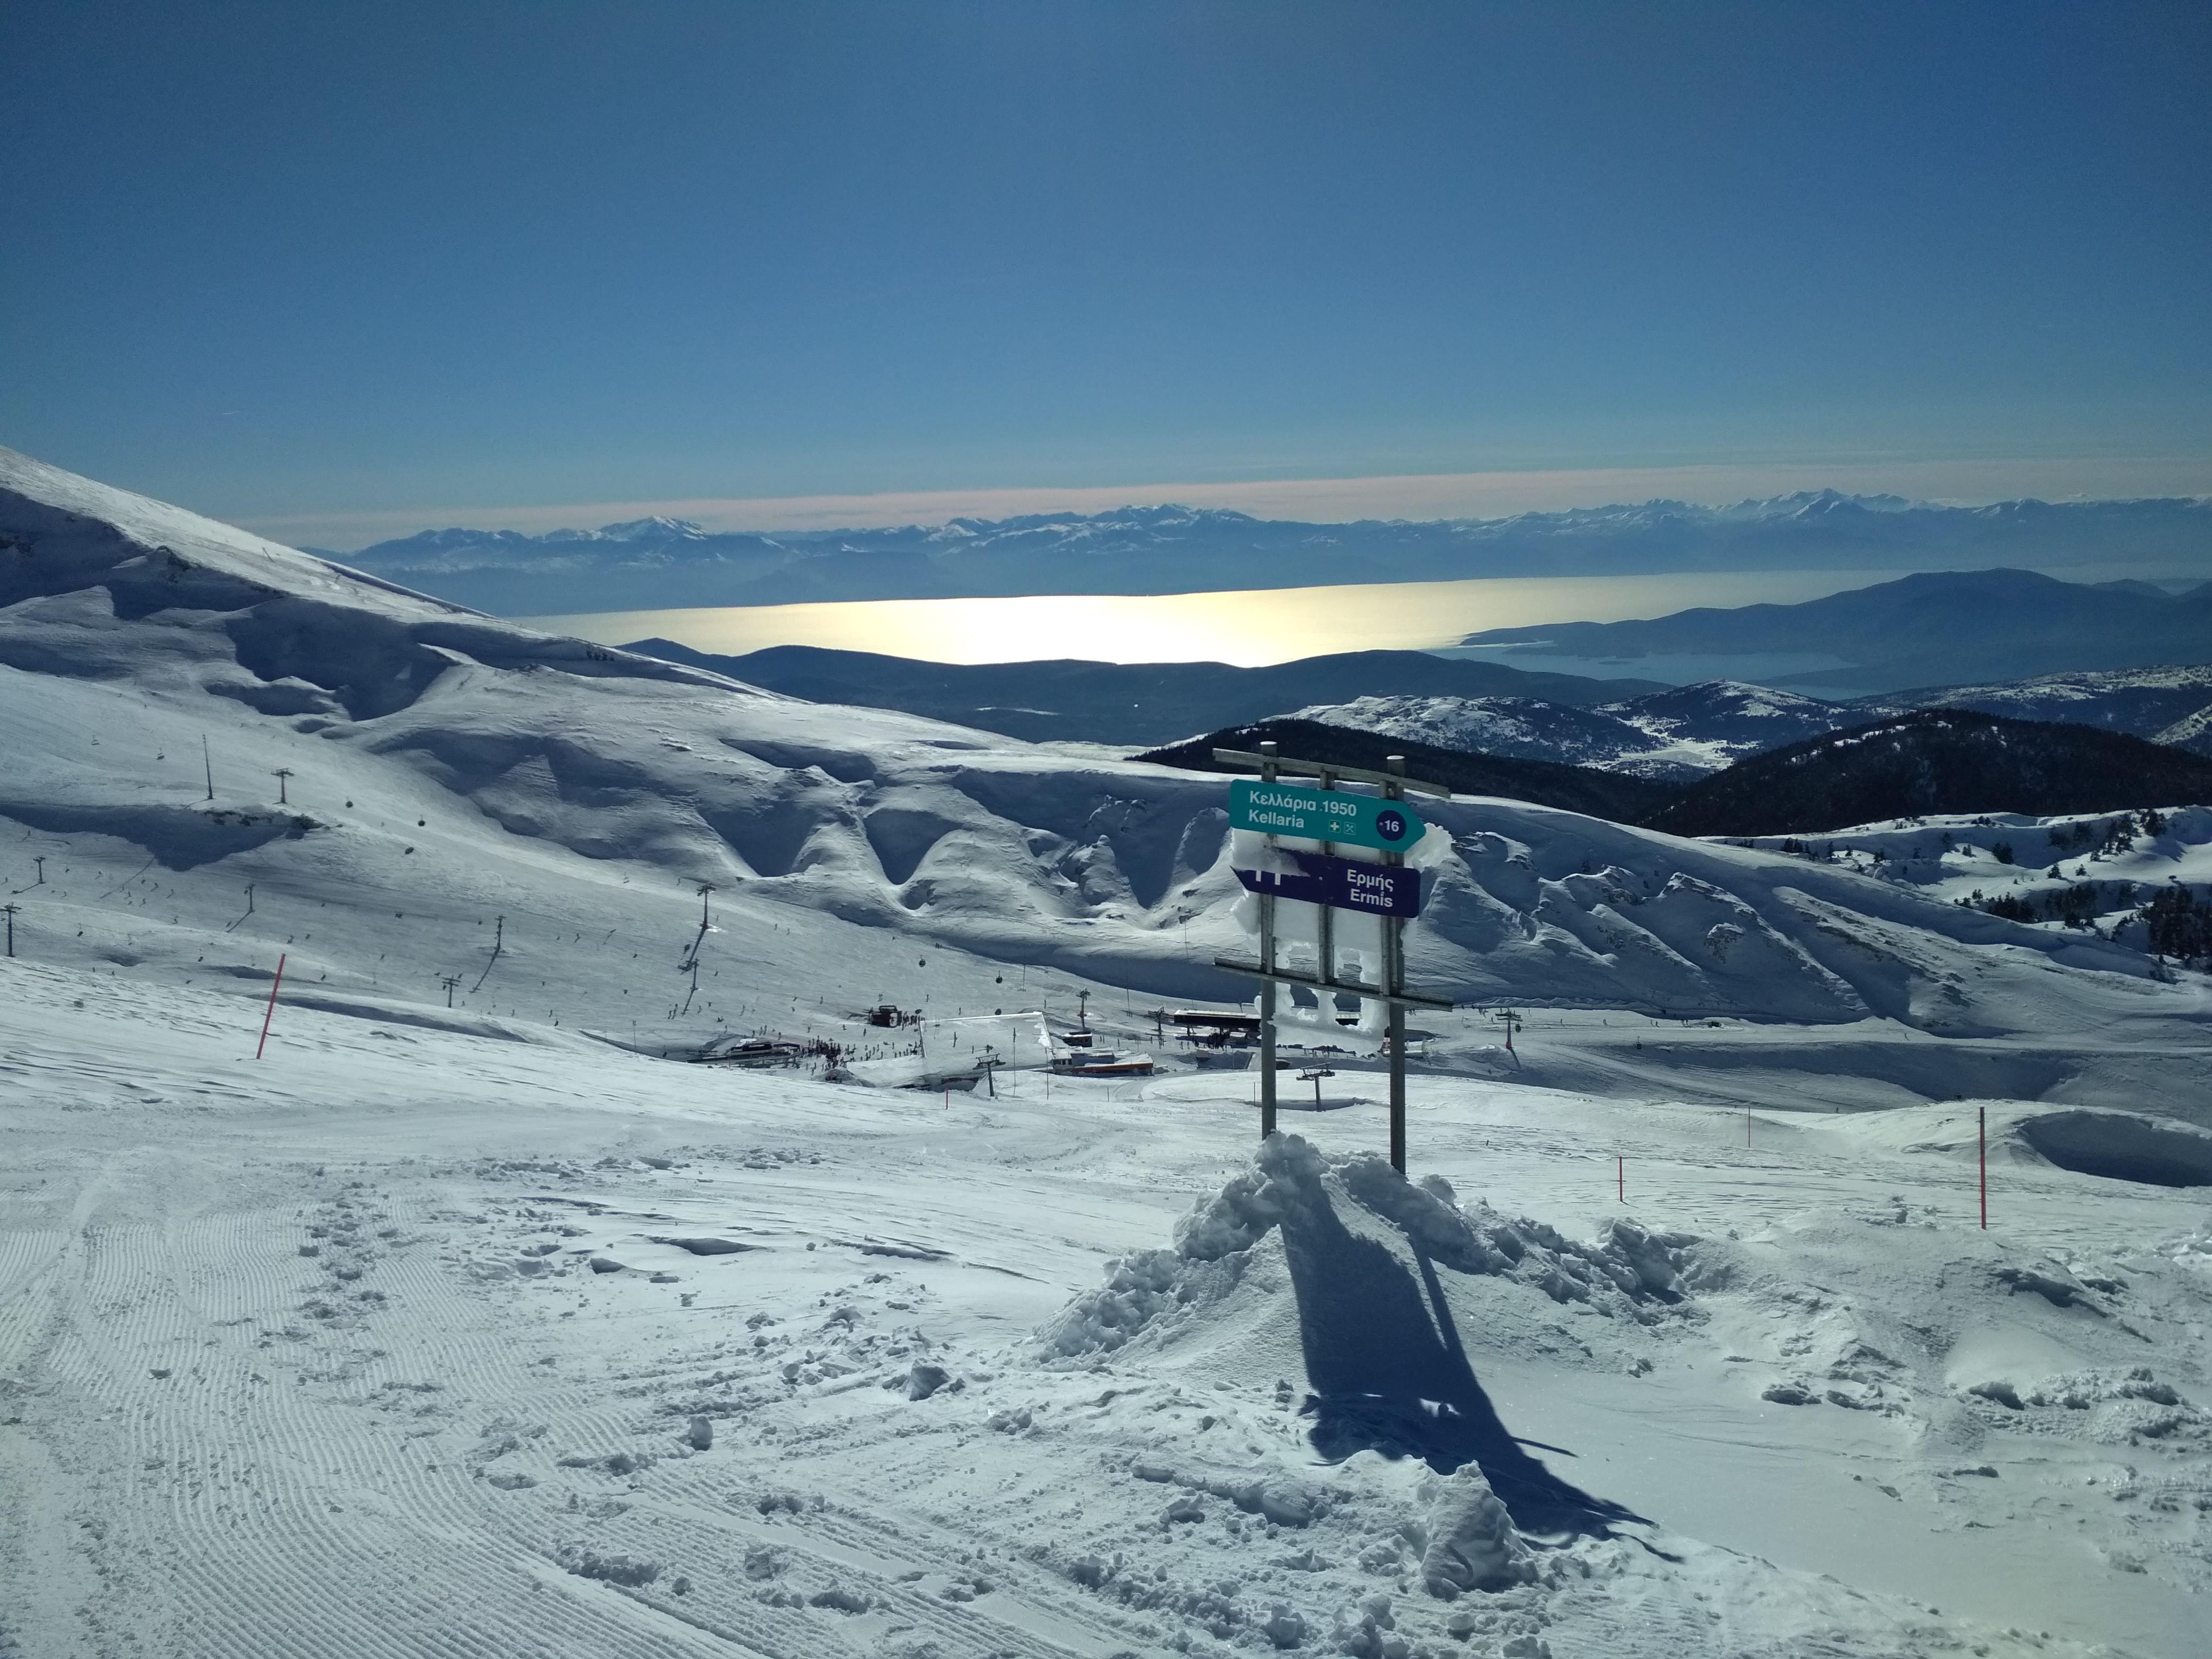 Sun, Sea & Skiing, Mount Parnassos